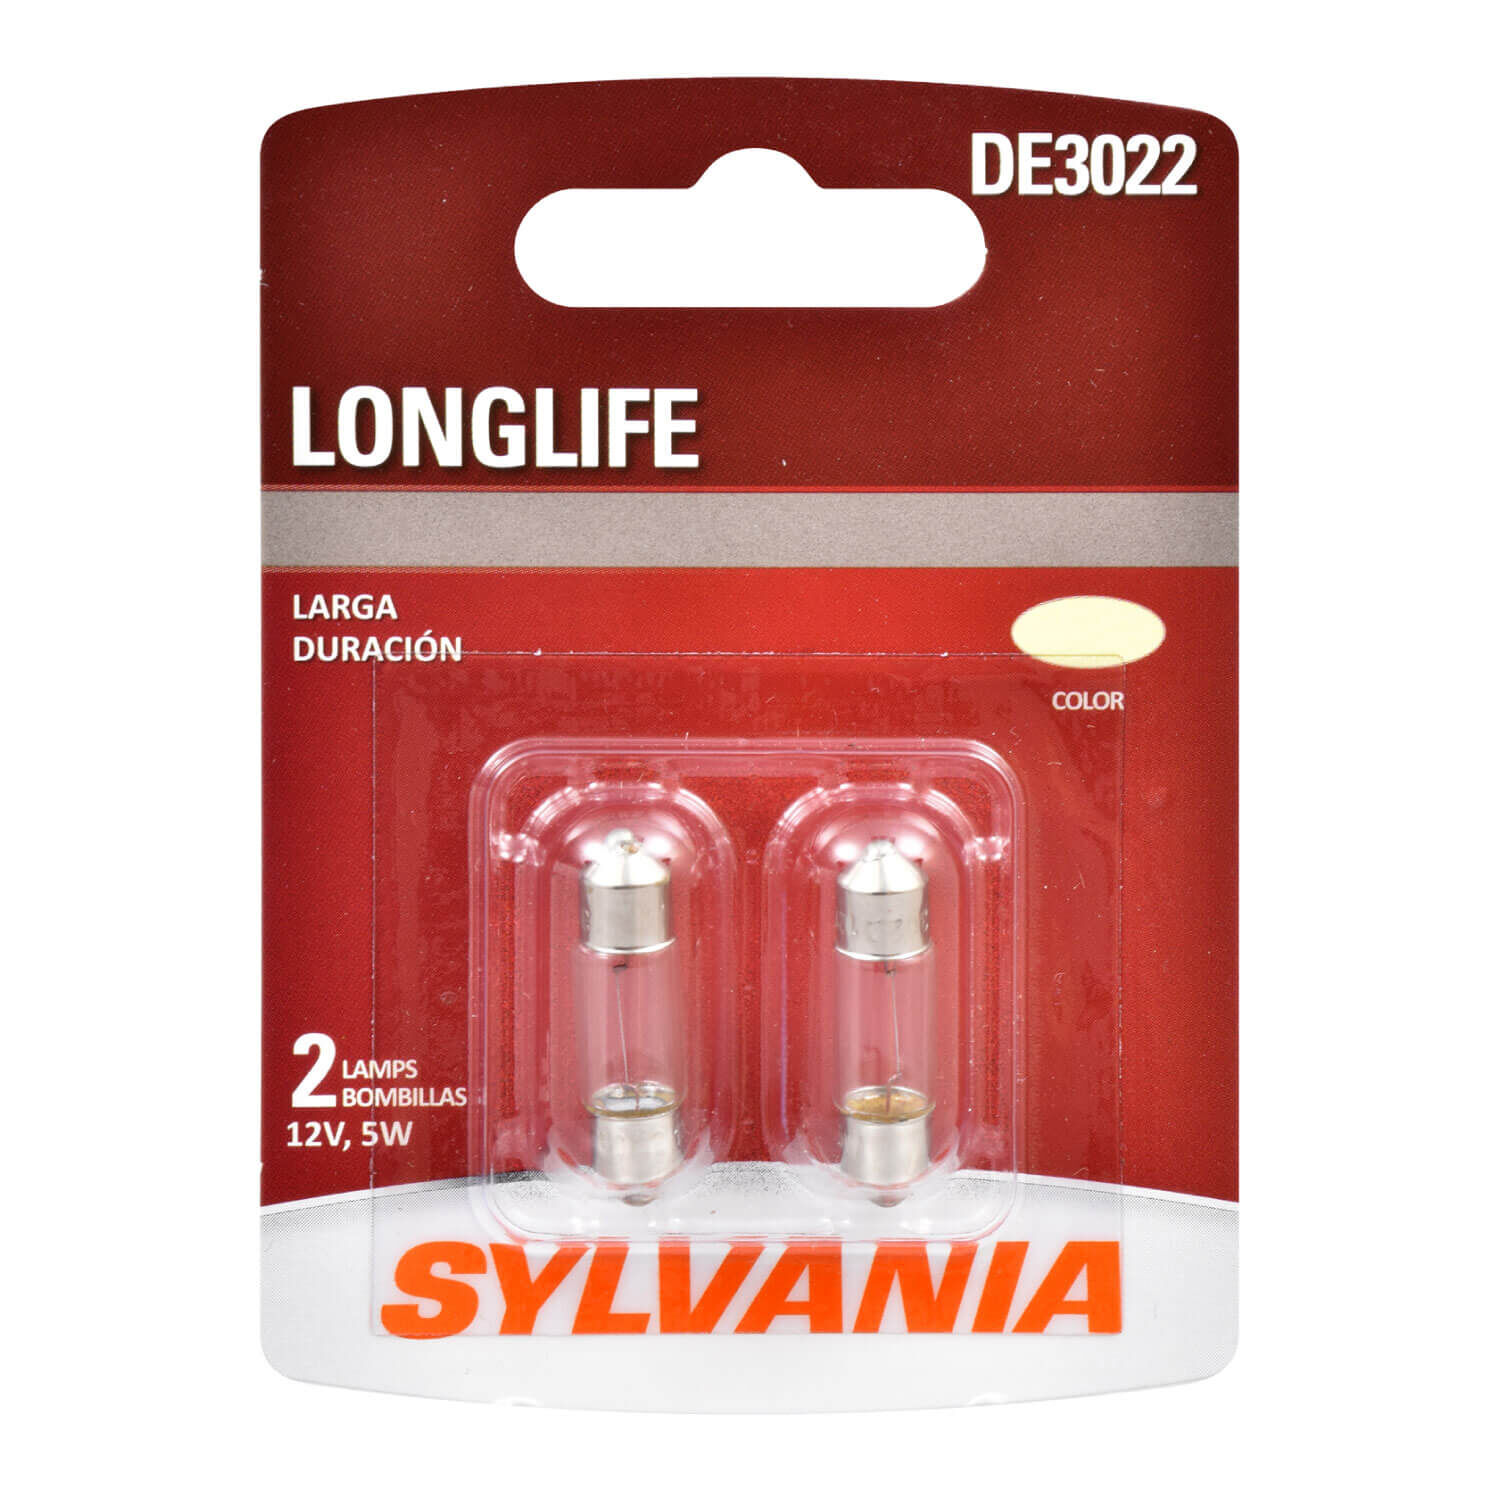 SYLVANIA DE3022 Long Life Miniature Bulb, Contains 2 Bulbs 